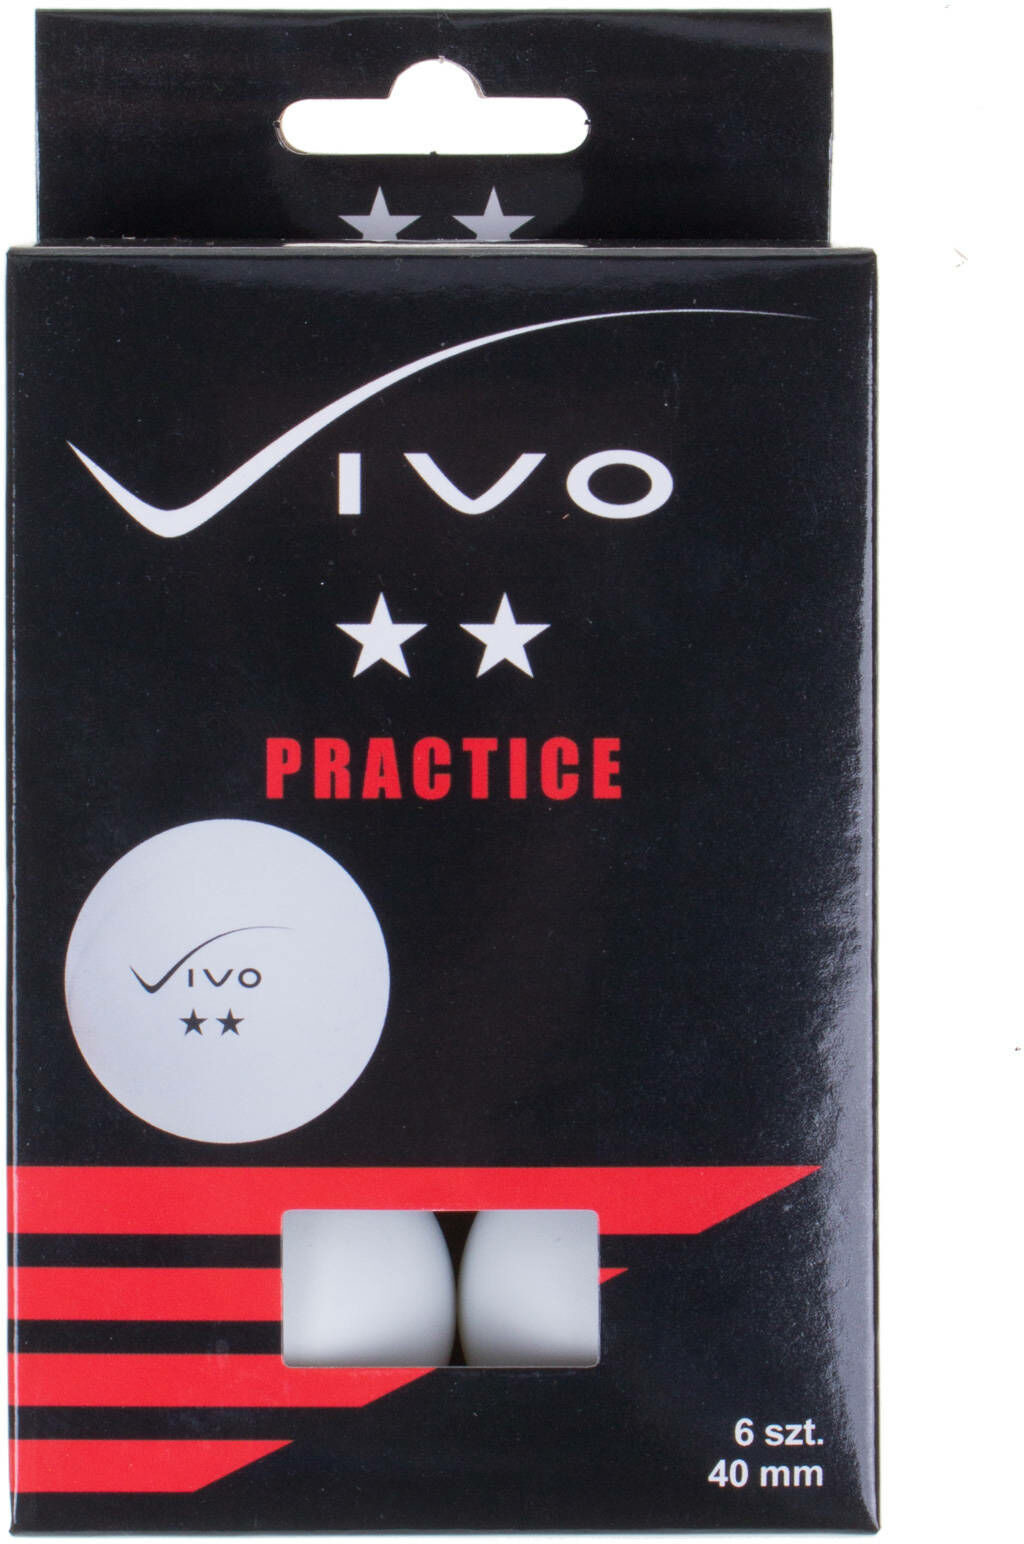 Pilki Vivo Vivo Practice 6 szt